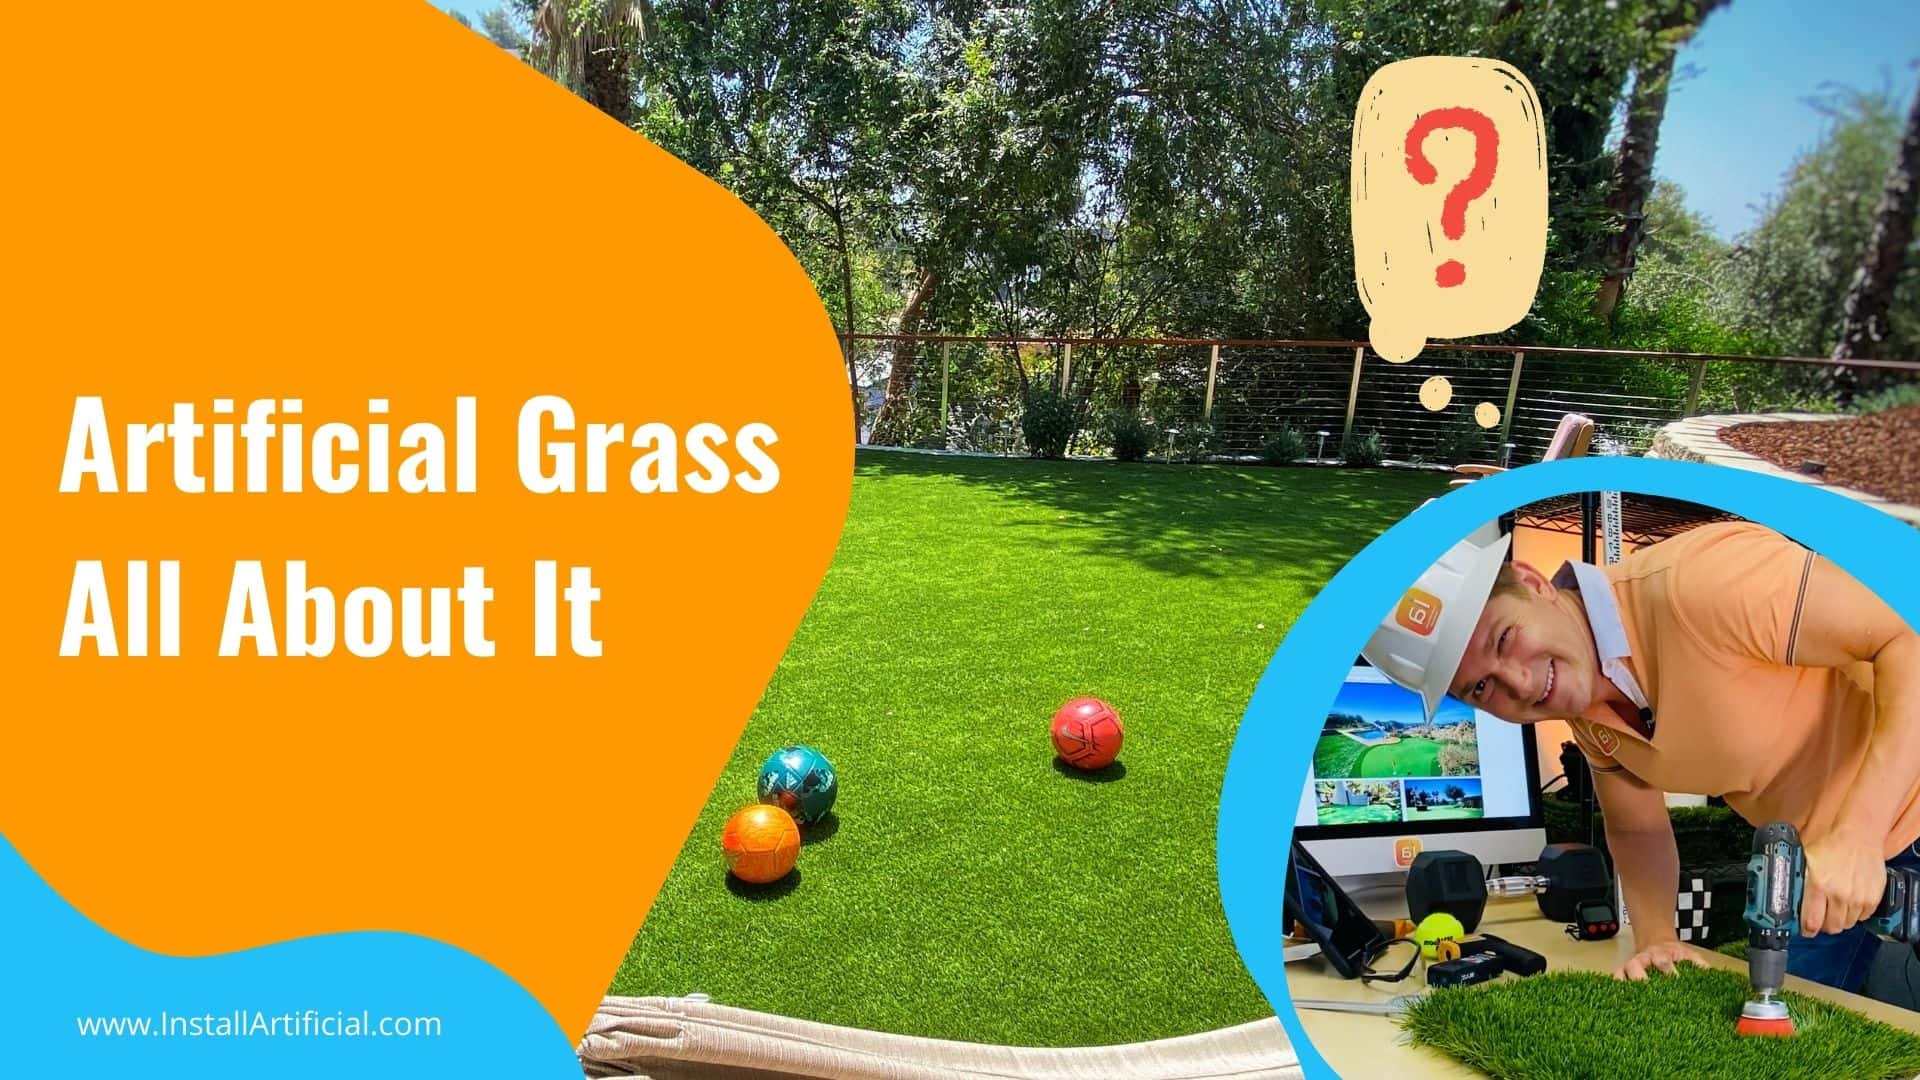 Artificial Grass & Fake Grass Overview From InstallArtificial